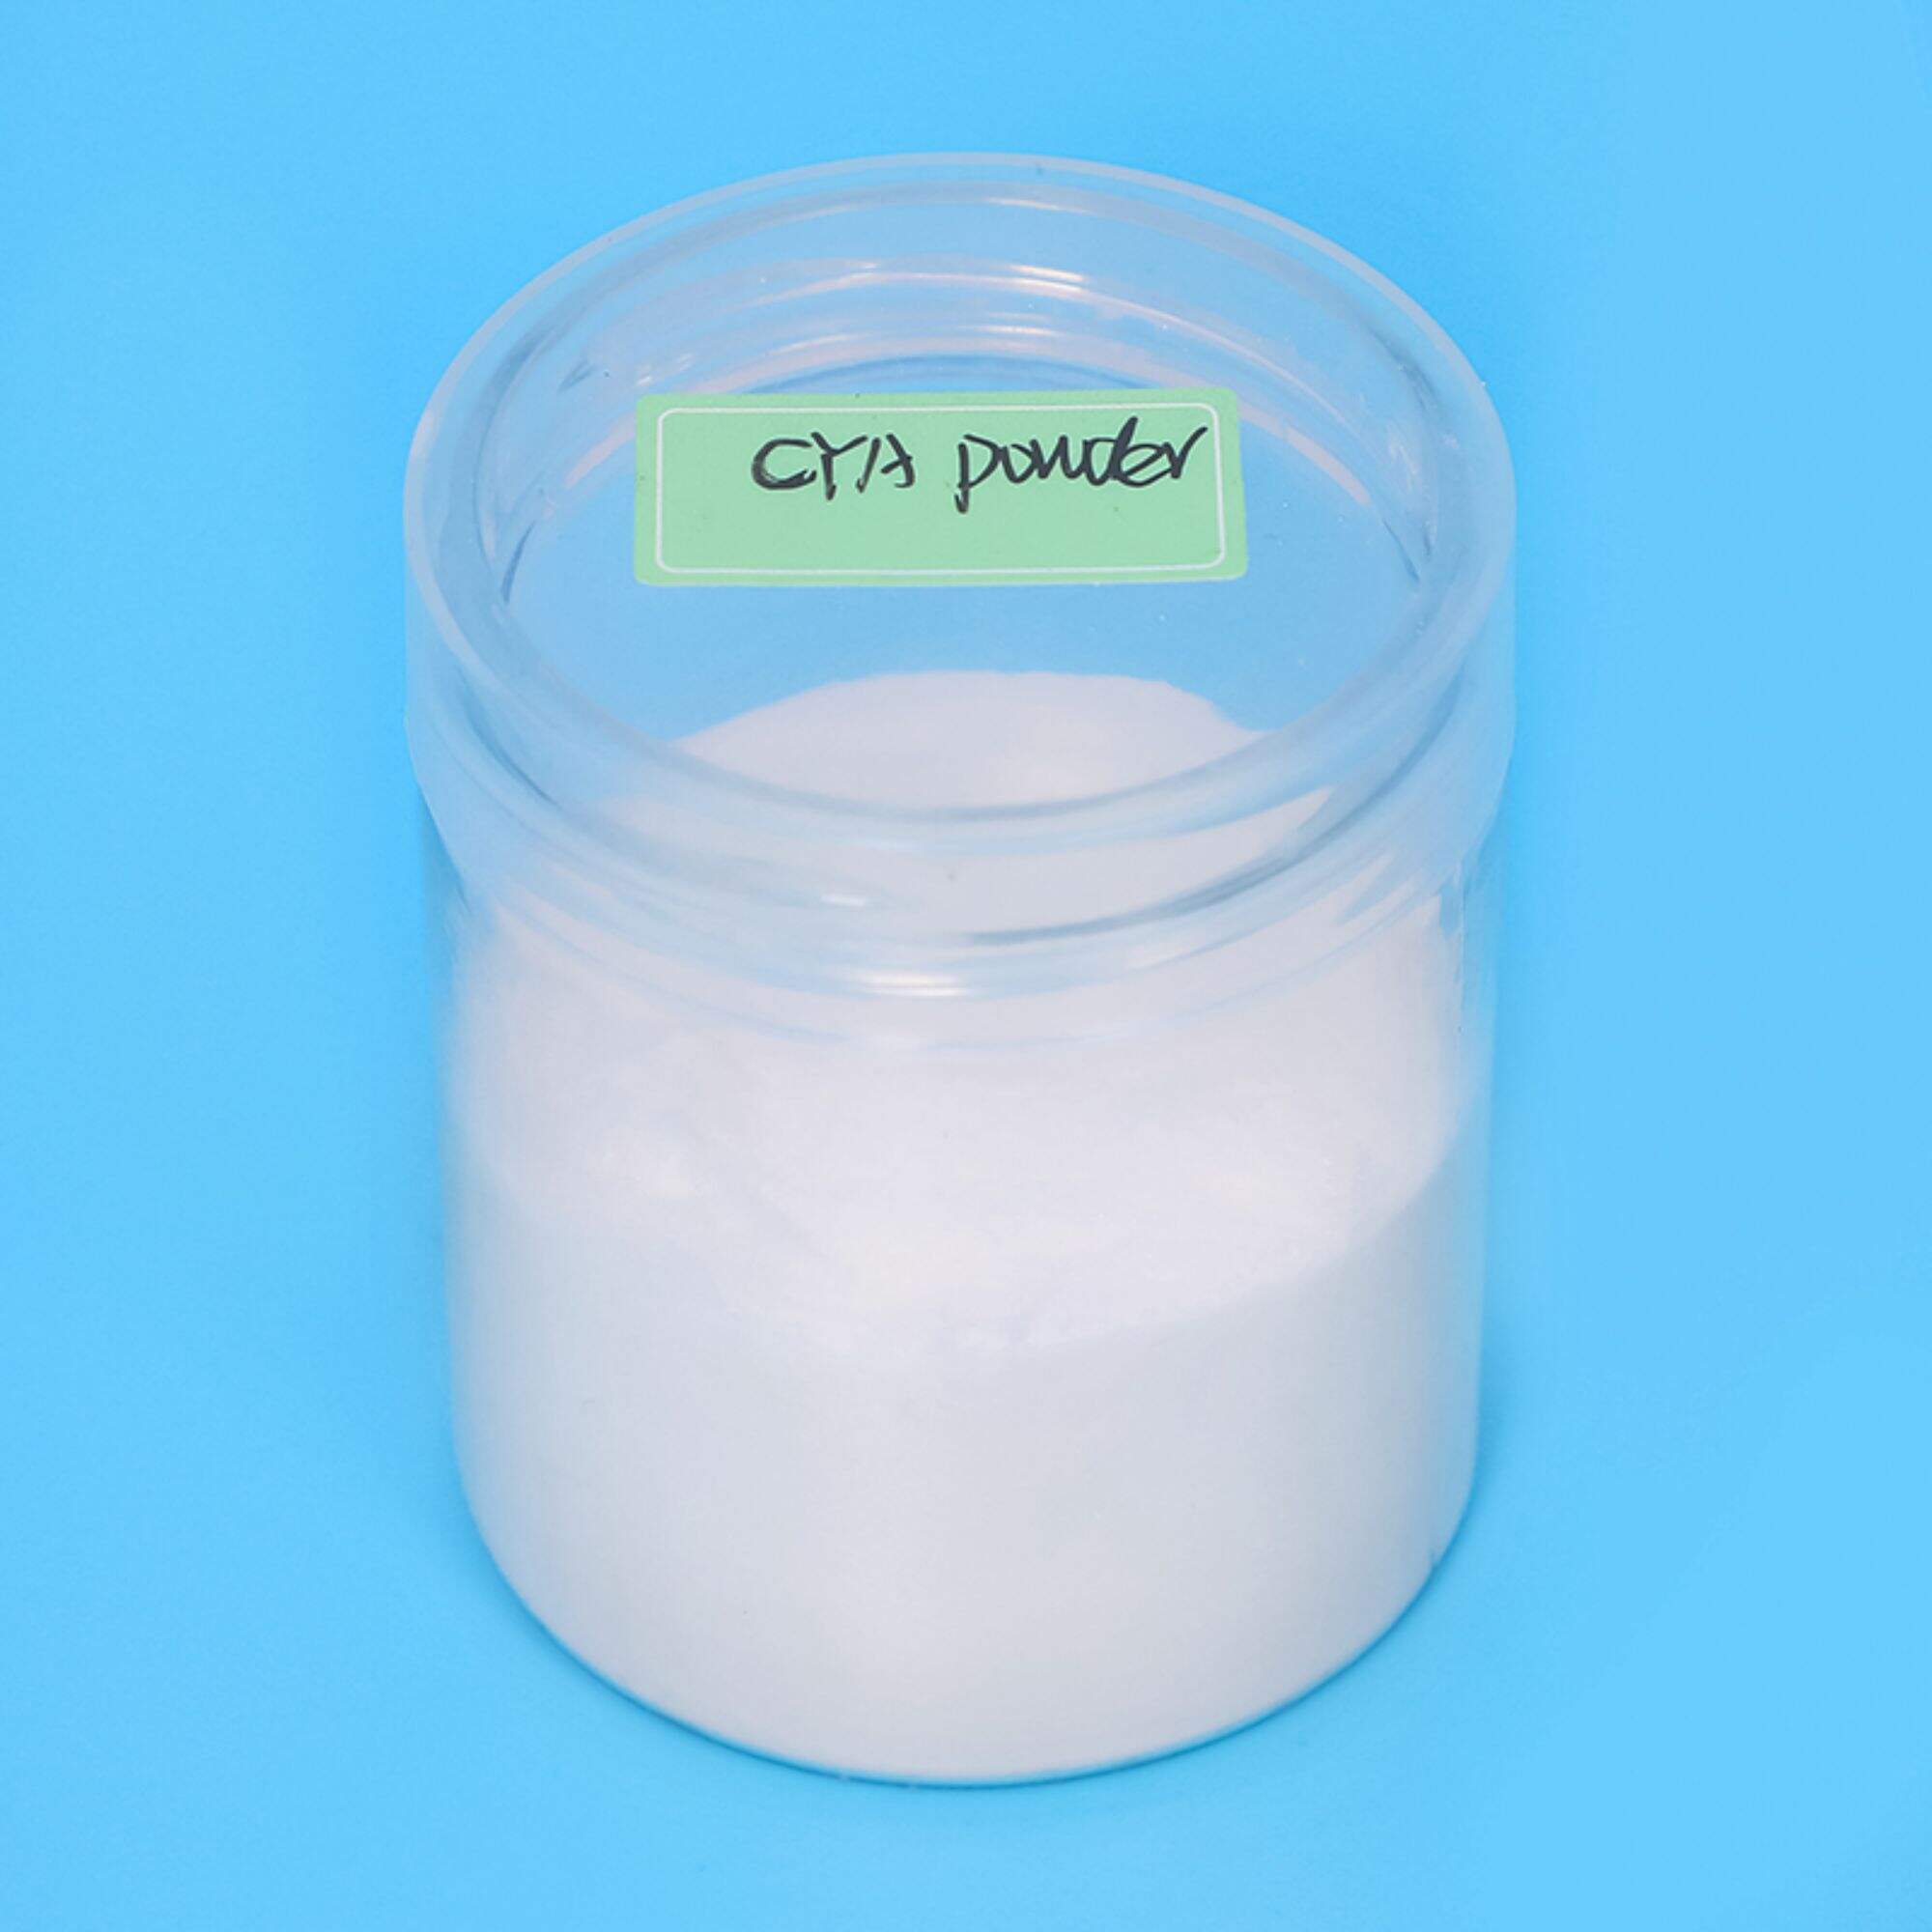 Cyanuric Acid(CYA)powder 108-80-5 stabilizer for swimming pool